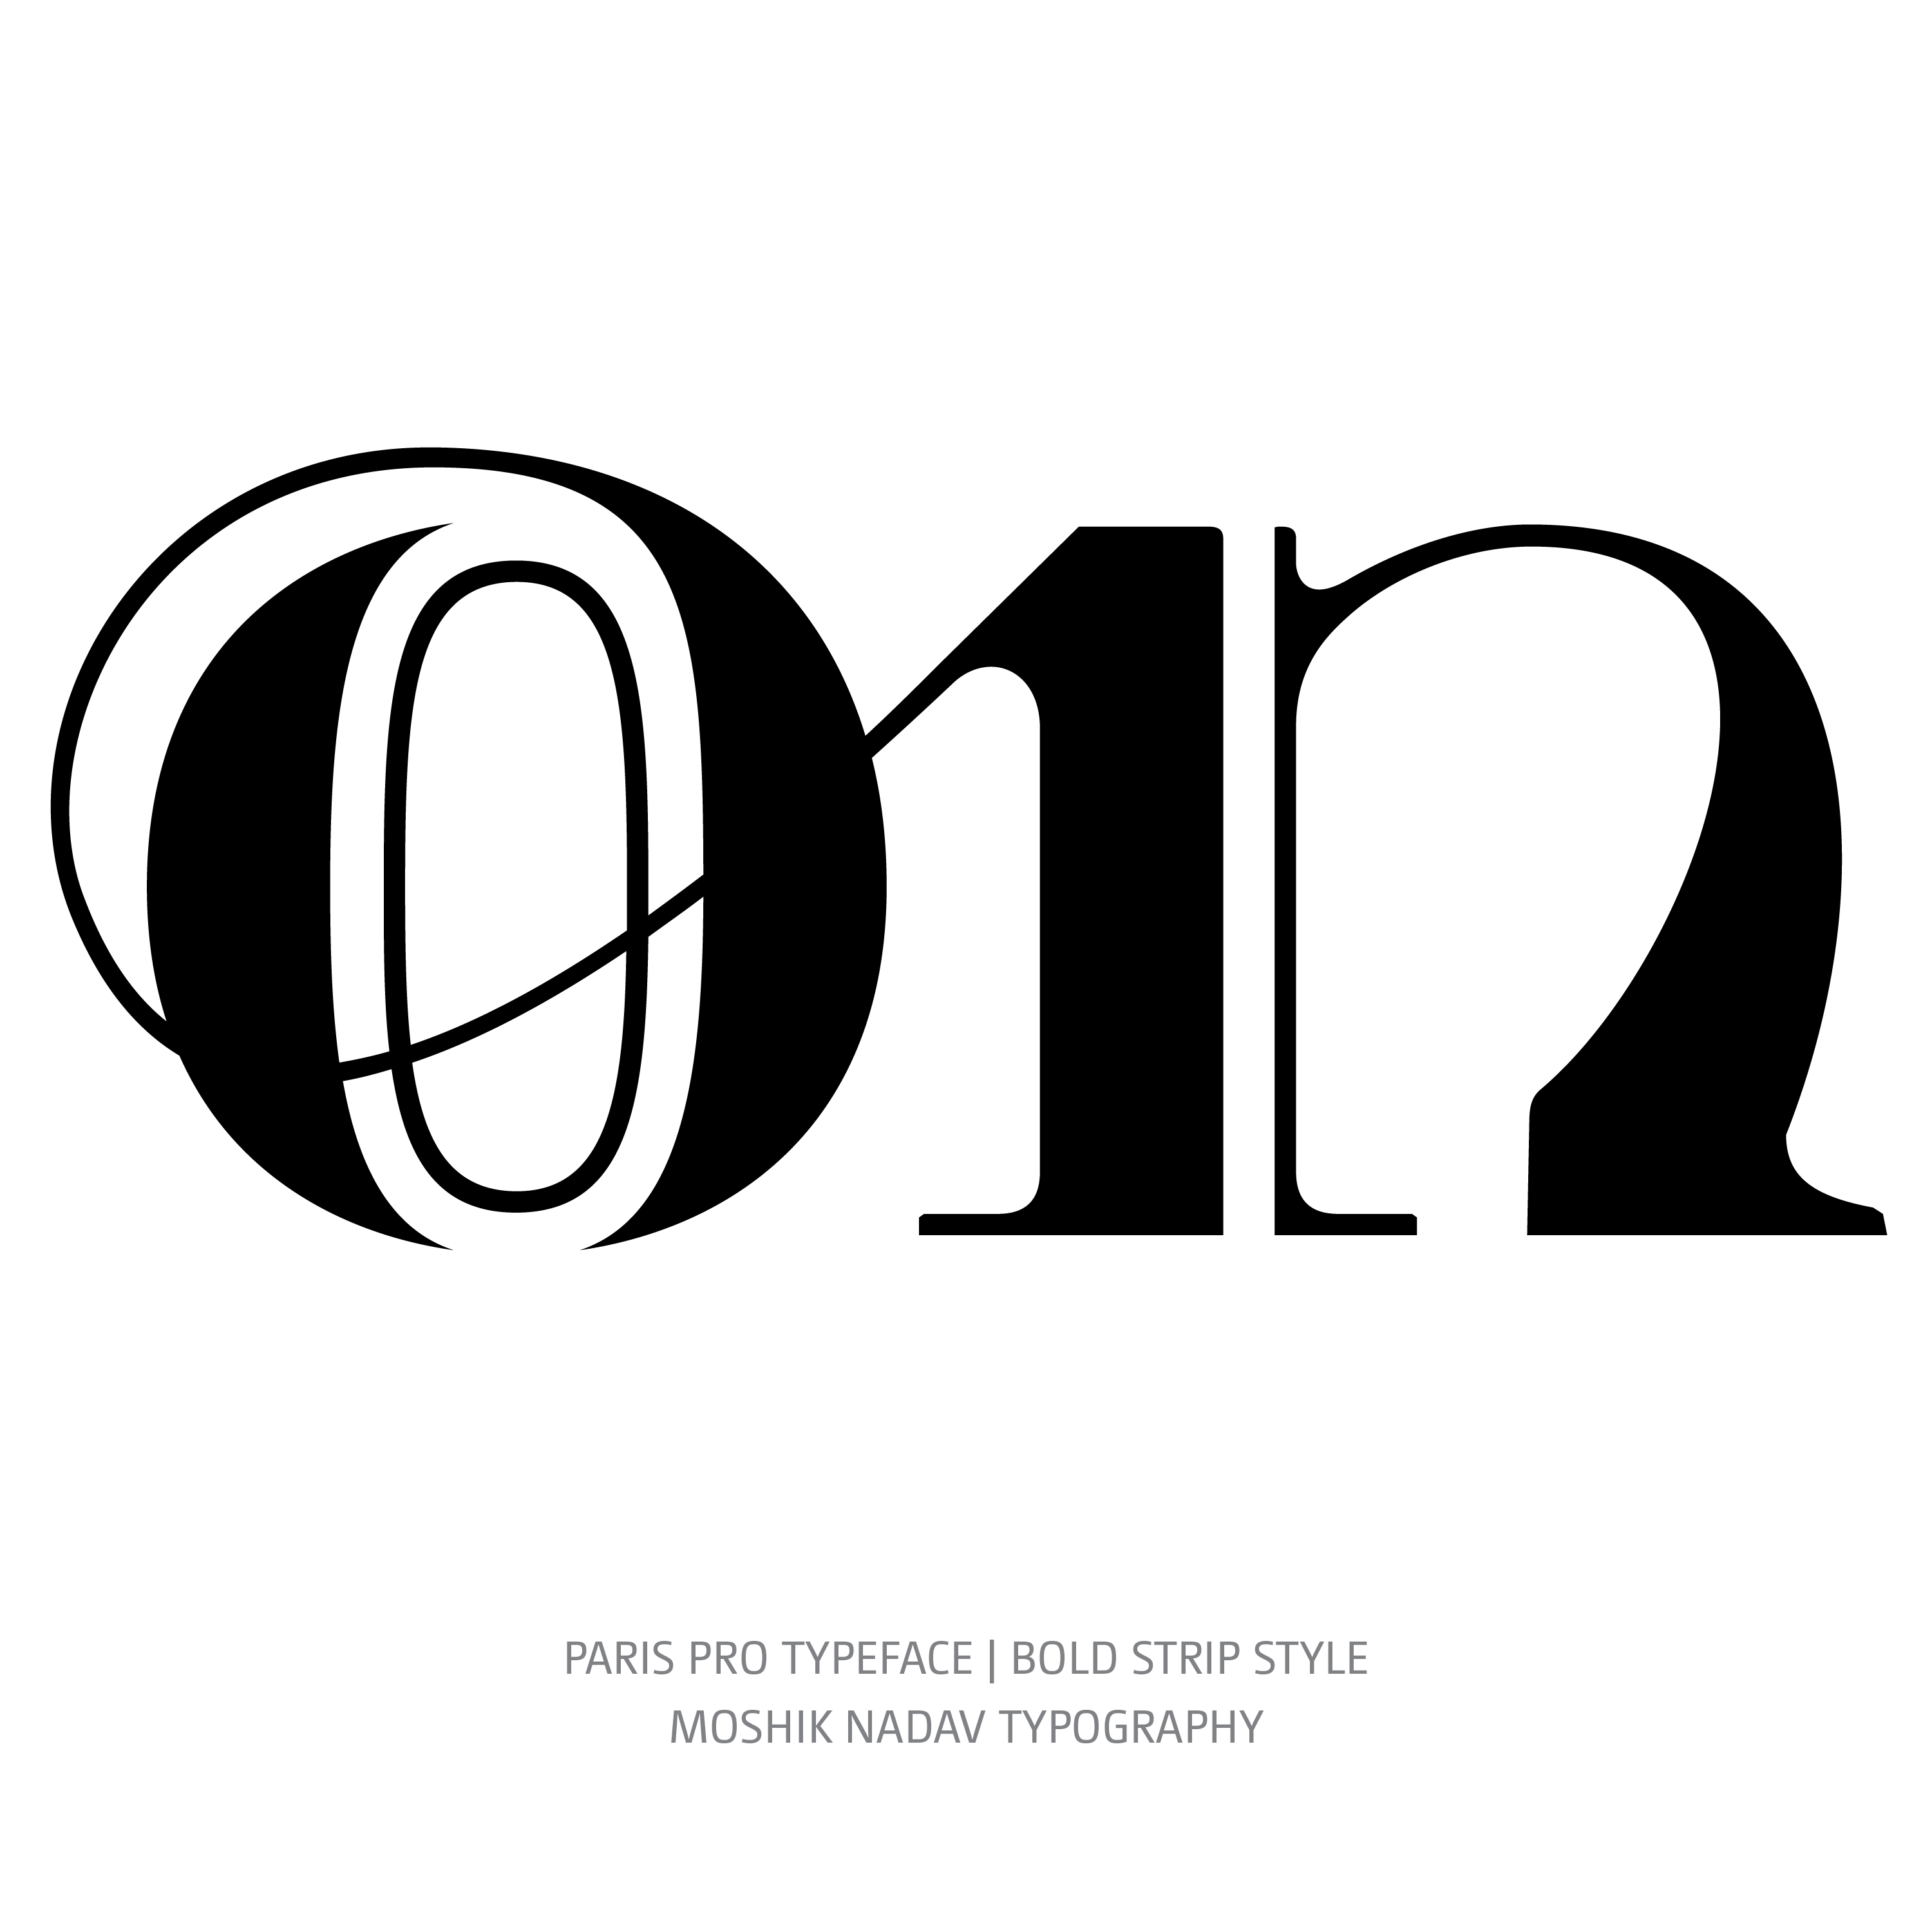 Paris Pro Typeface Bold Strip on ligature